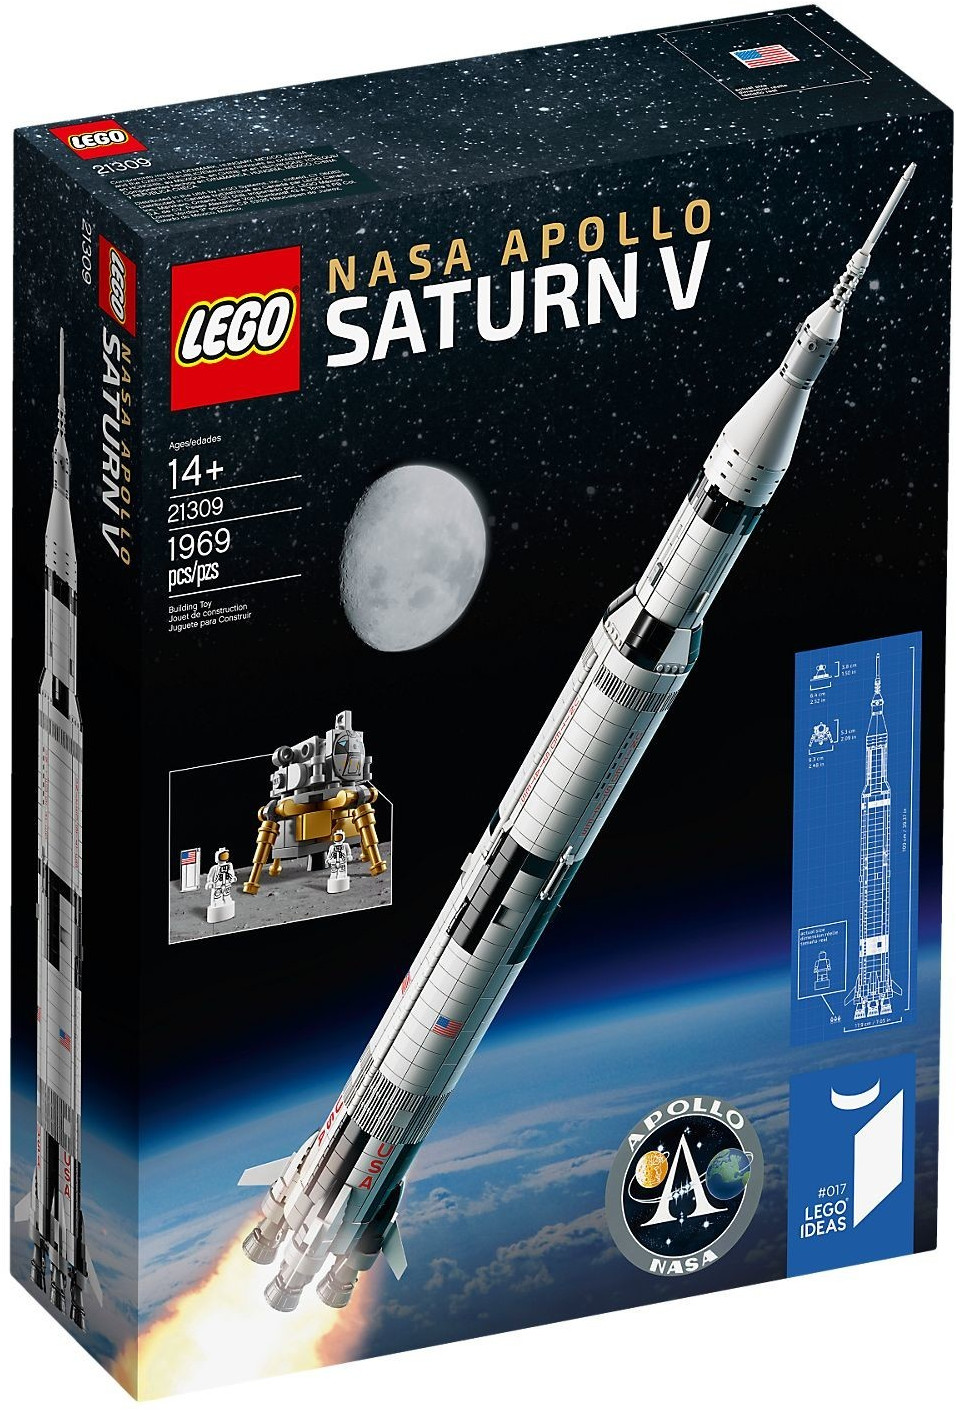 εικόνα του LEGO 21309 Nasa Apollo Saturn V